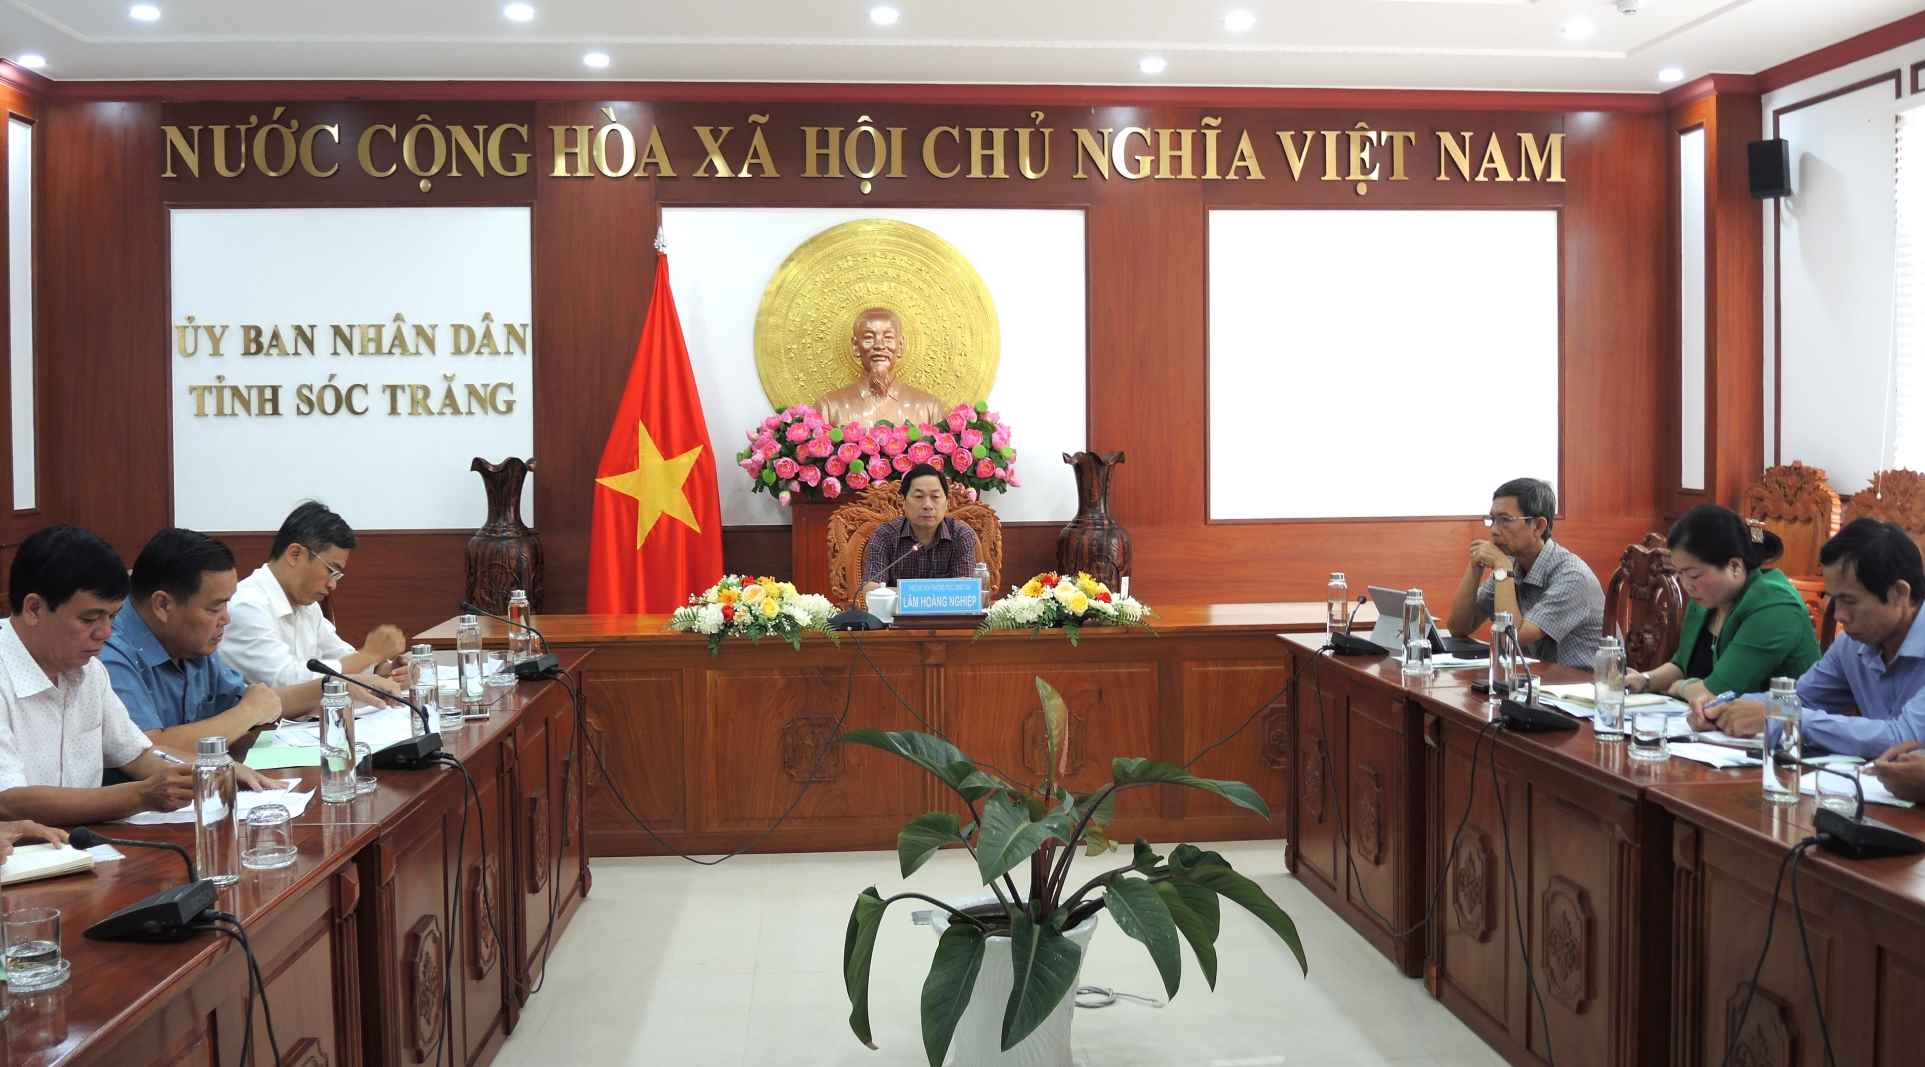 Ông Lâm Hoàng Nghiệp - Phó Chủ tịch UBND tỉnh Sóc Trăng chủ trì cuộc họp. Ảnh: Phương Anh